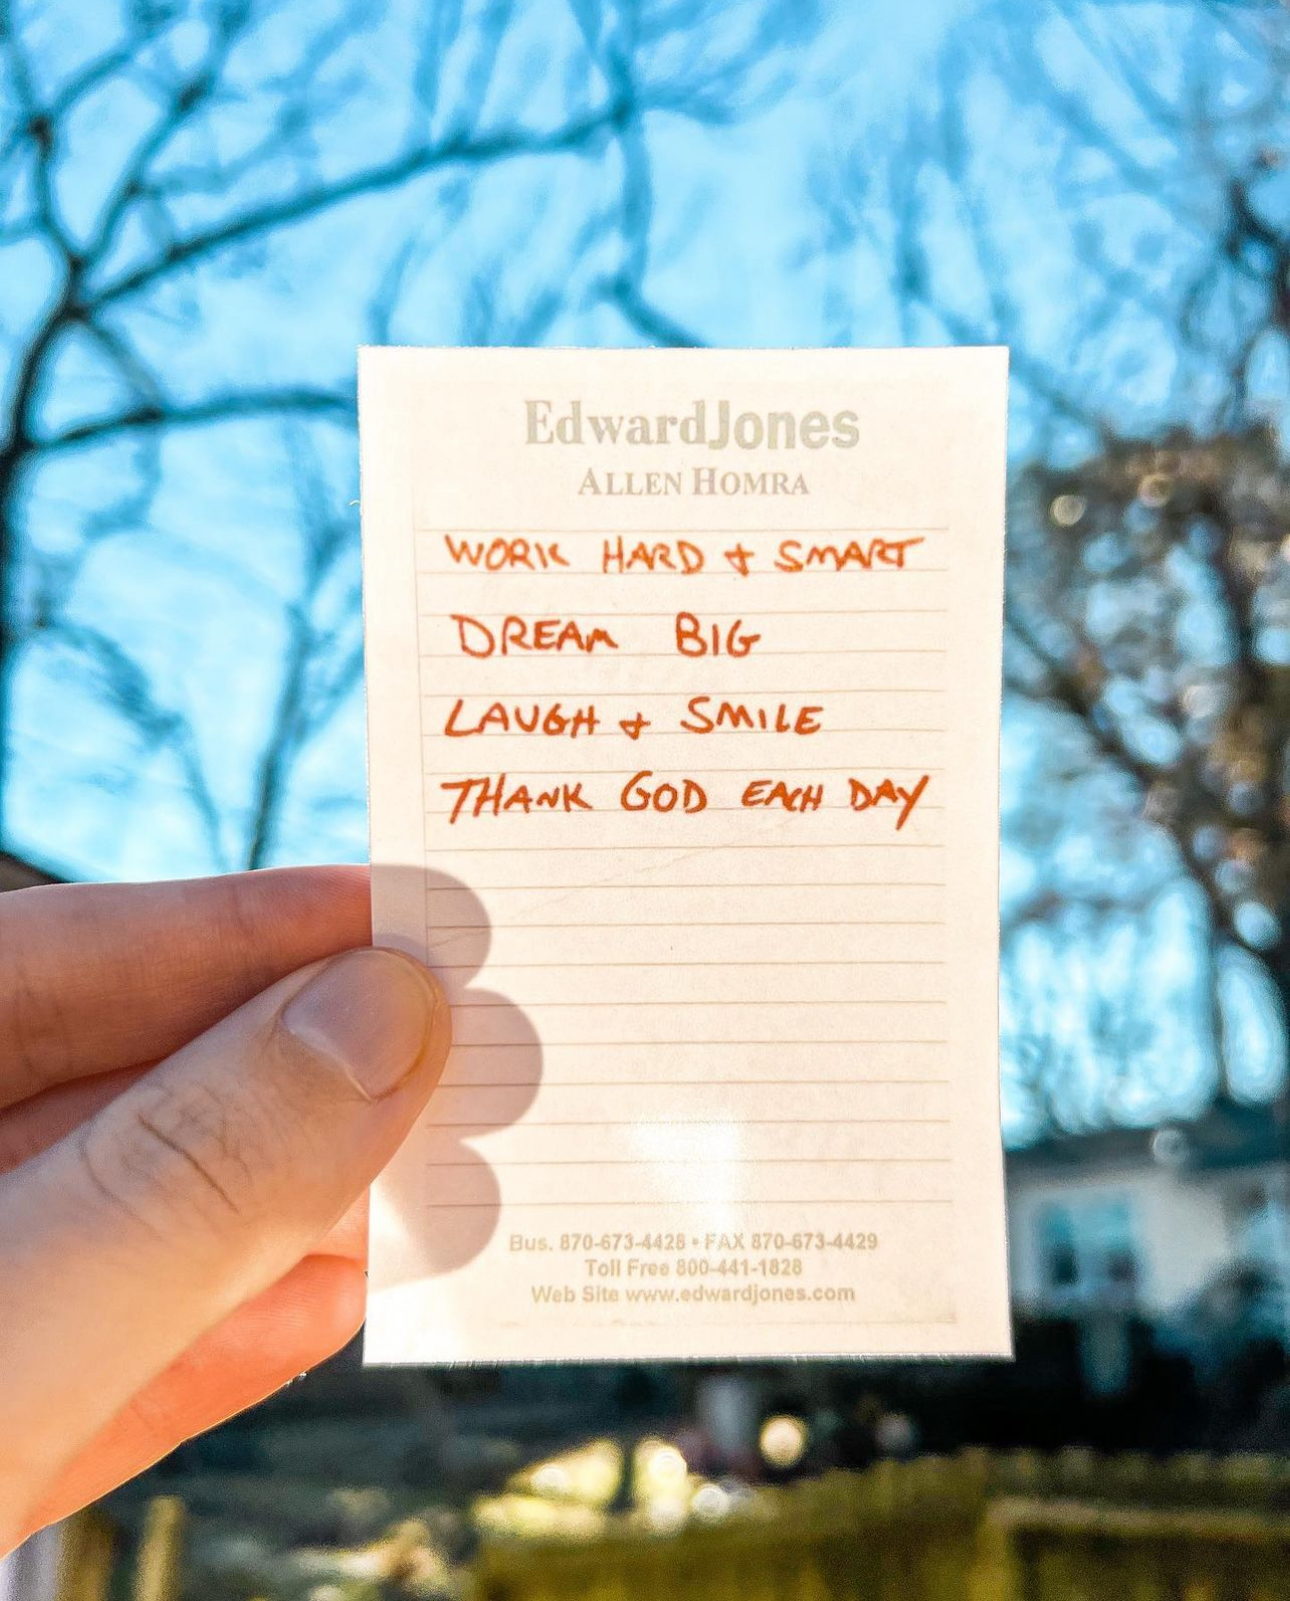 Photo of a hand holding a handwritten list on an sheet of Edward Jones notepad paper.